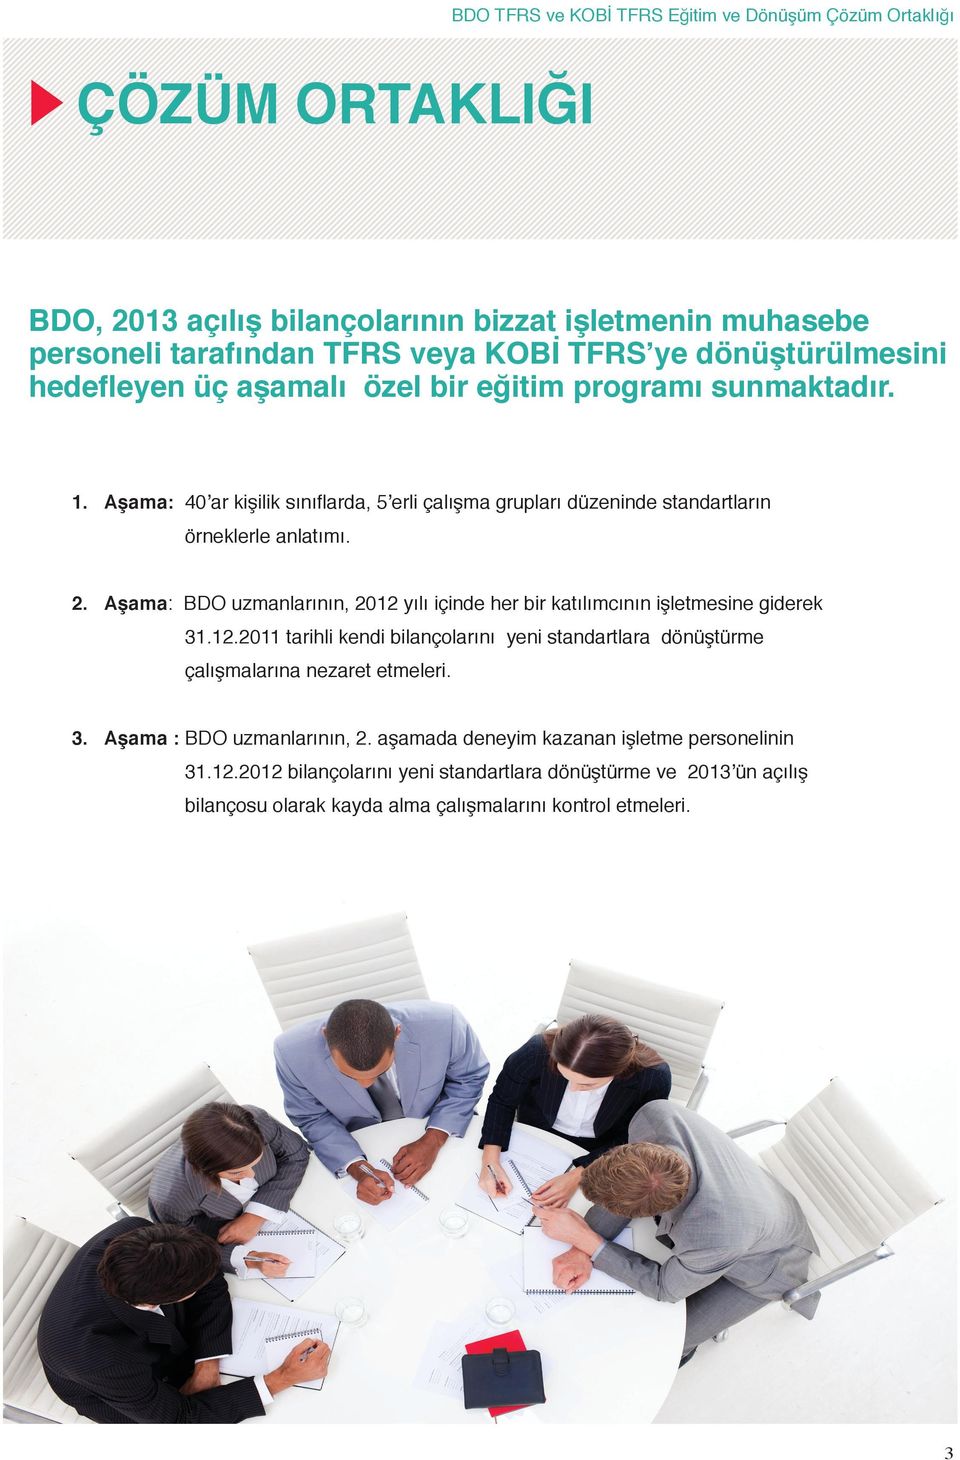 Aşama: BDO uzmanlarının, 2012 yılı içinde her bir katılımcının işletmesine giderek 31.12.2011 tarihli kendi bilançolarını yeni standartlara dönüştürme çalışmalarına nezaret etmeleri. 3. Aşama : BDO uzmanlarının, 2.